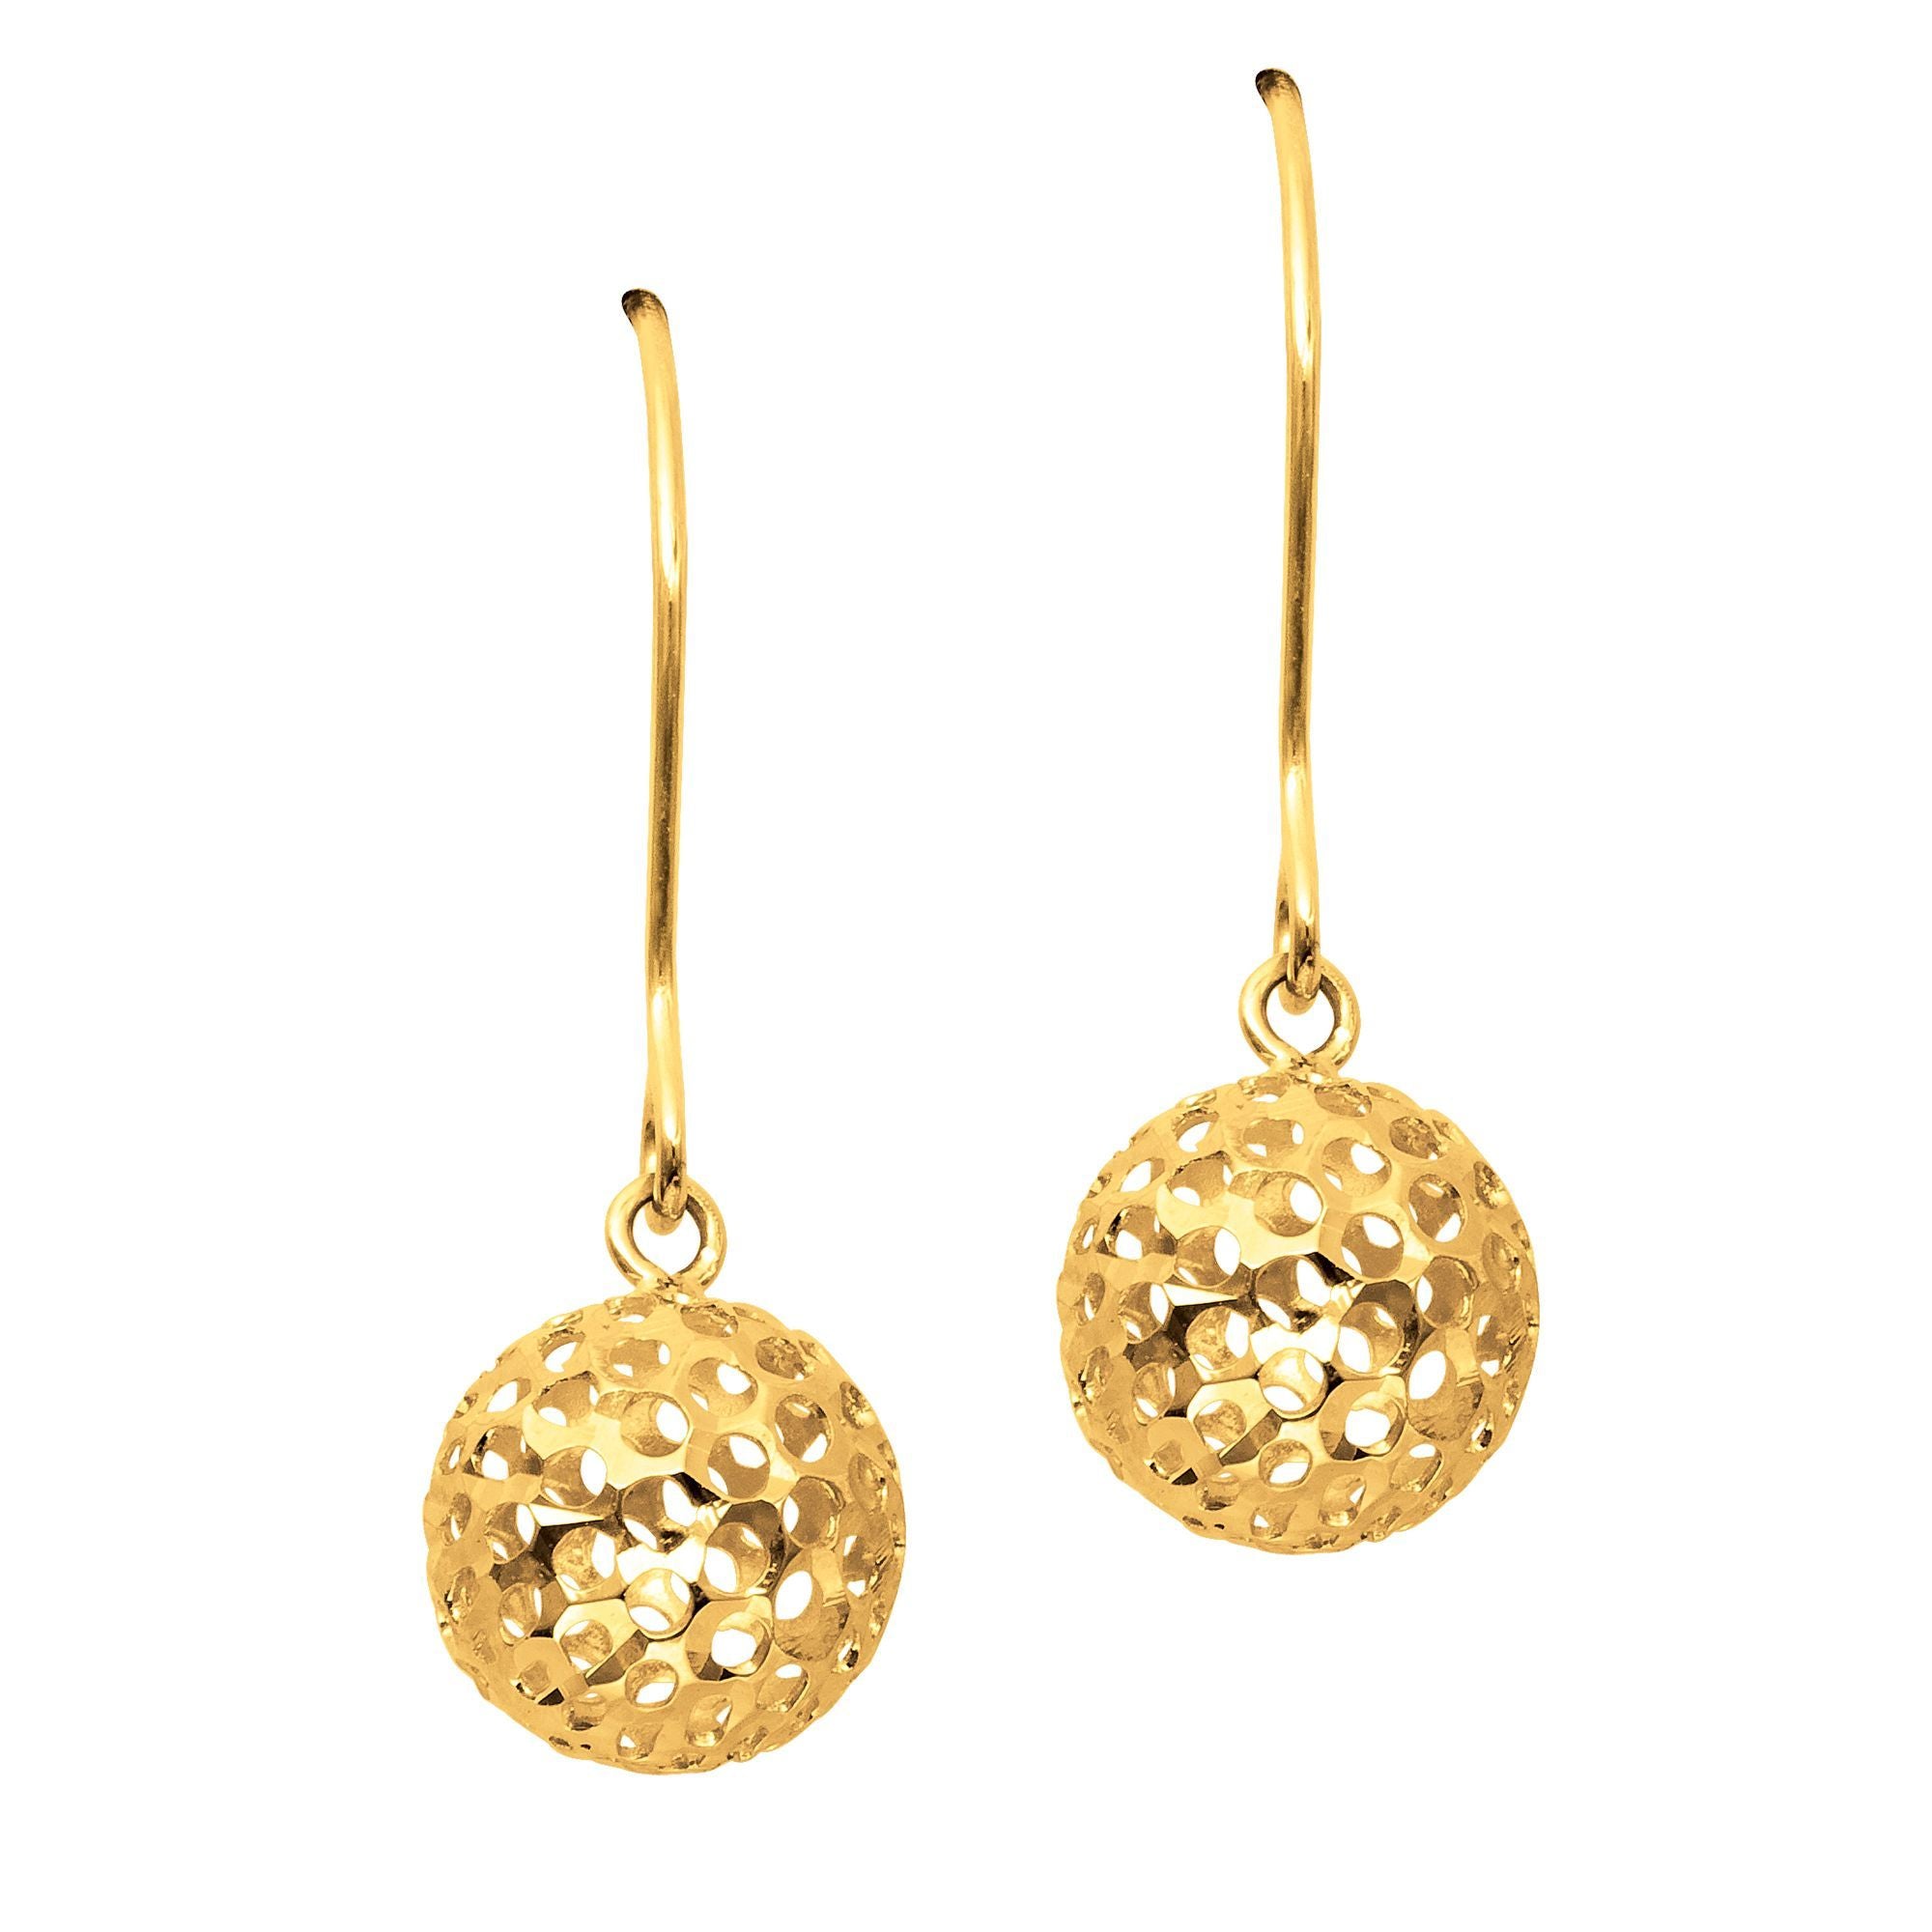 14K Gold Ball Drop Earrings | One Size | Earrings Drop Earrings | Valentine's Day